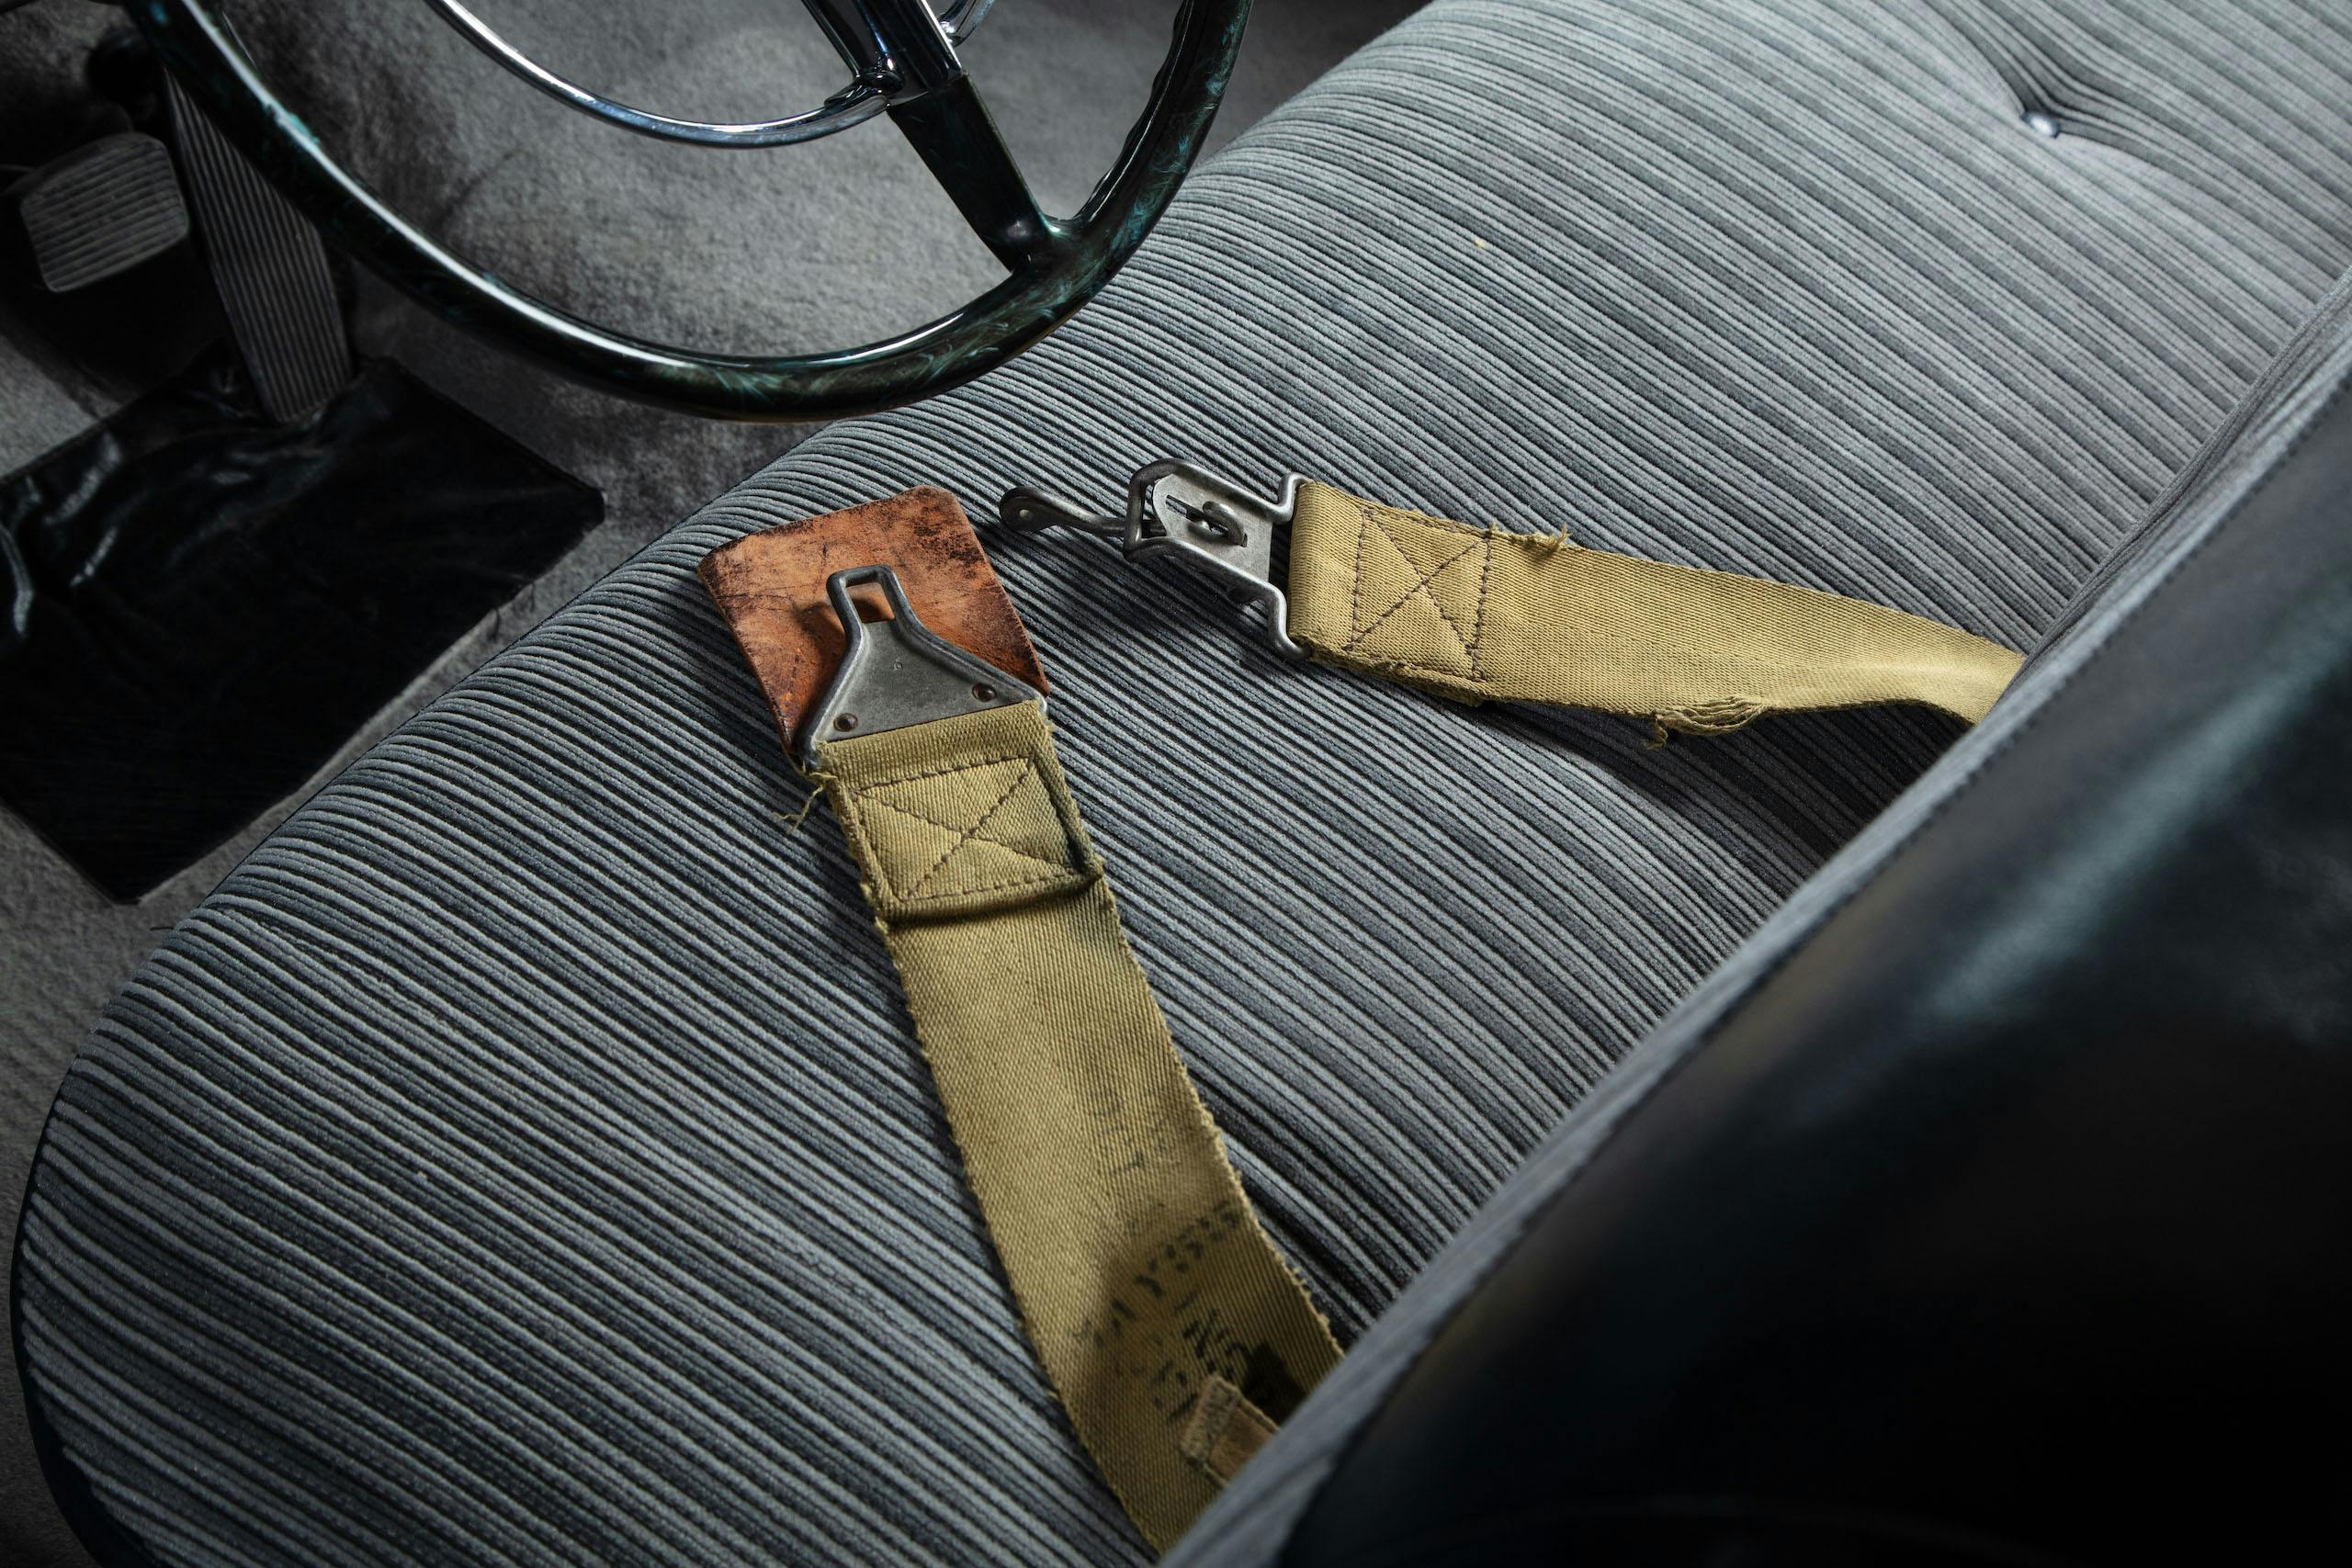 Hudson Hornet interior seat belt detail